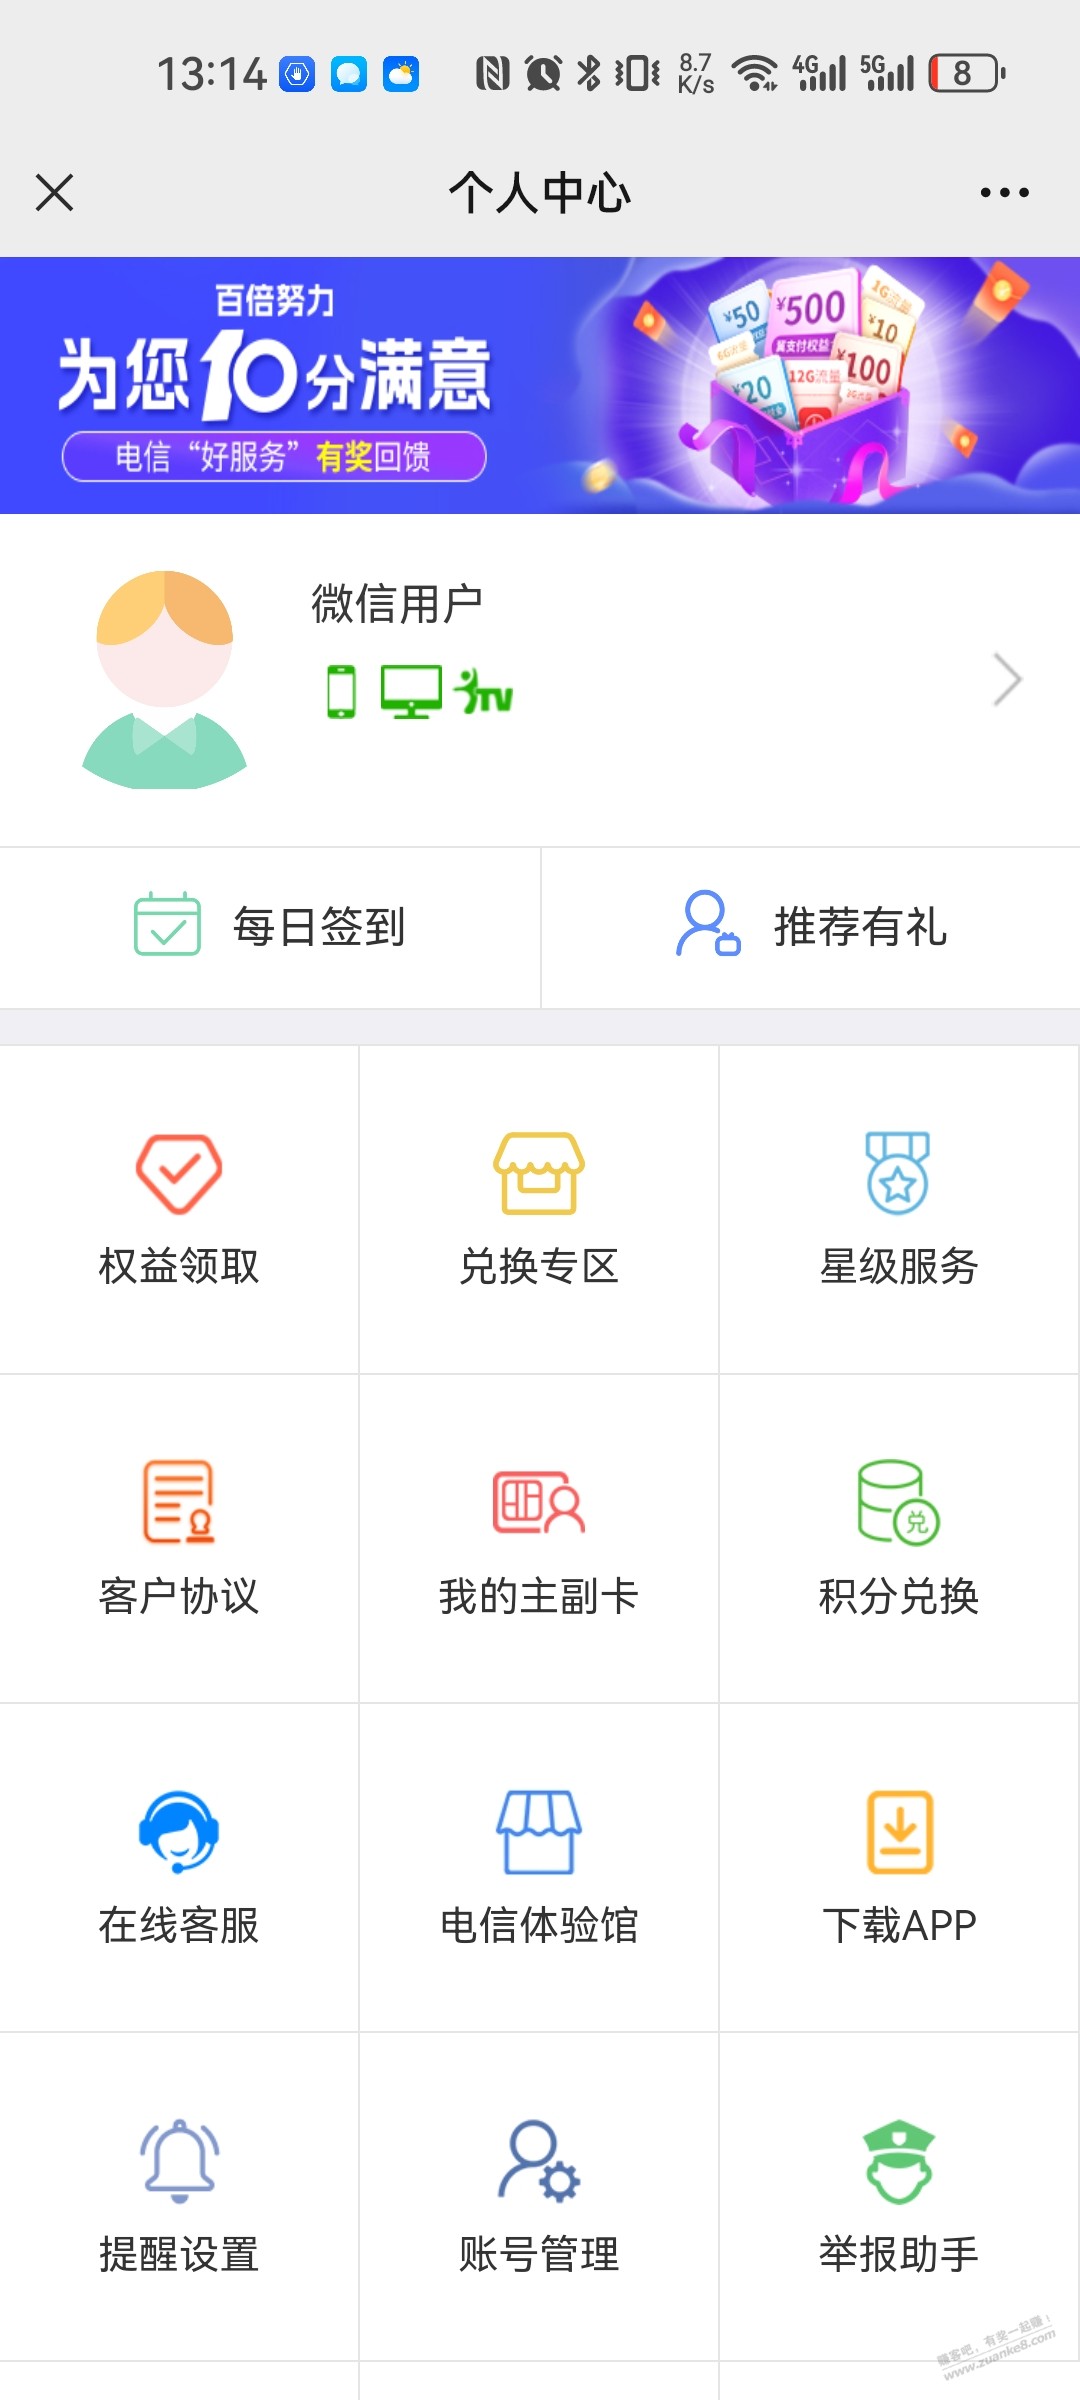 安徽电信流量-惠小助(52huixz.com)